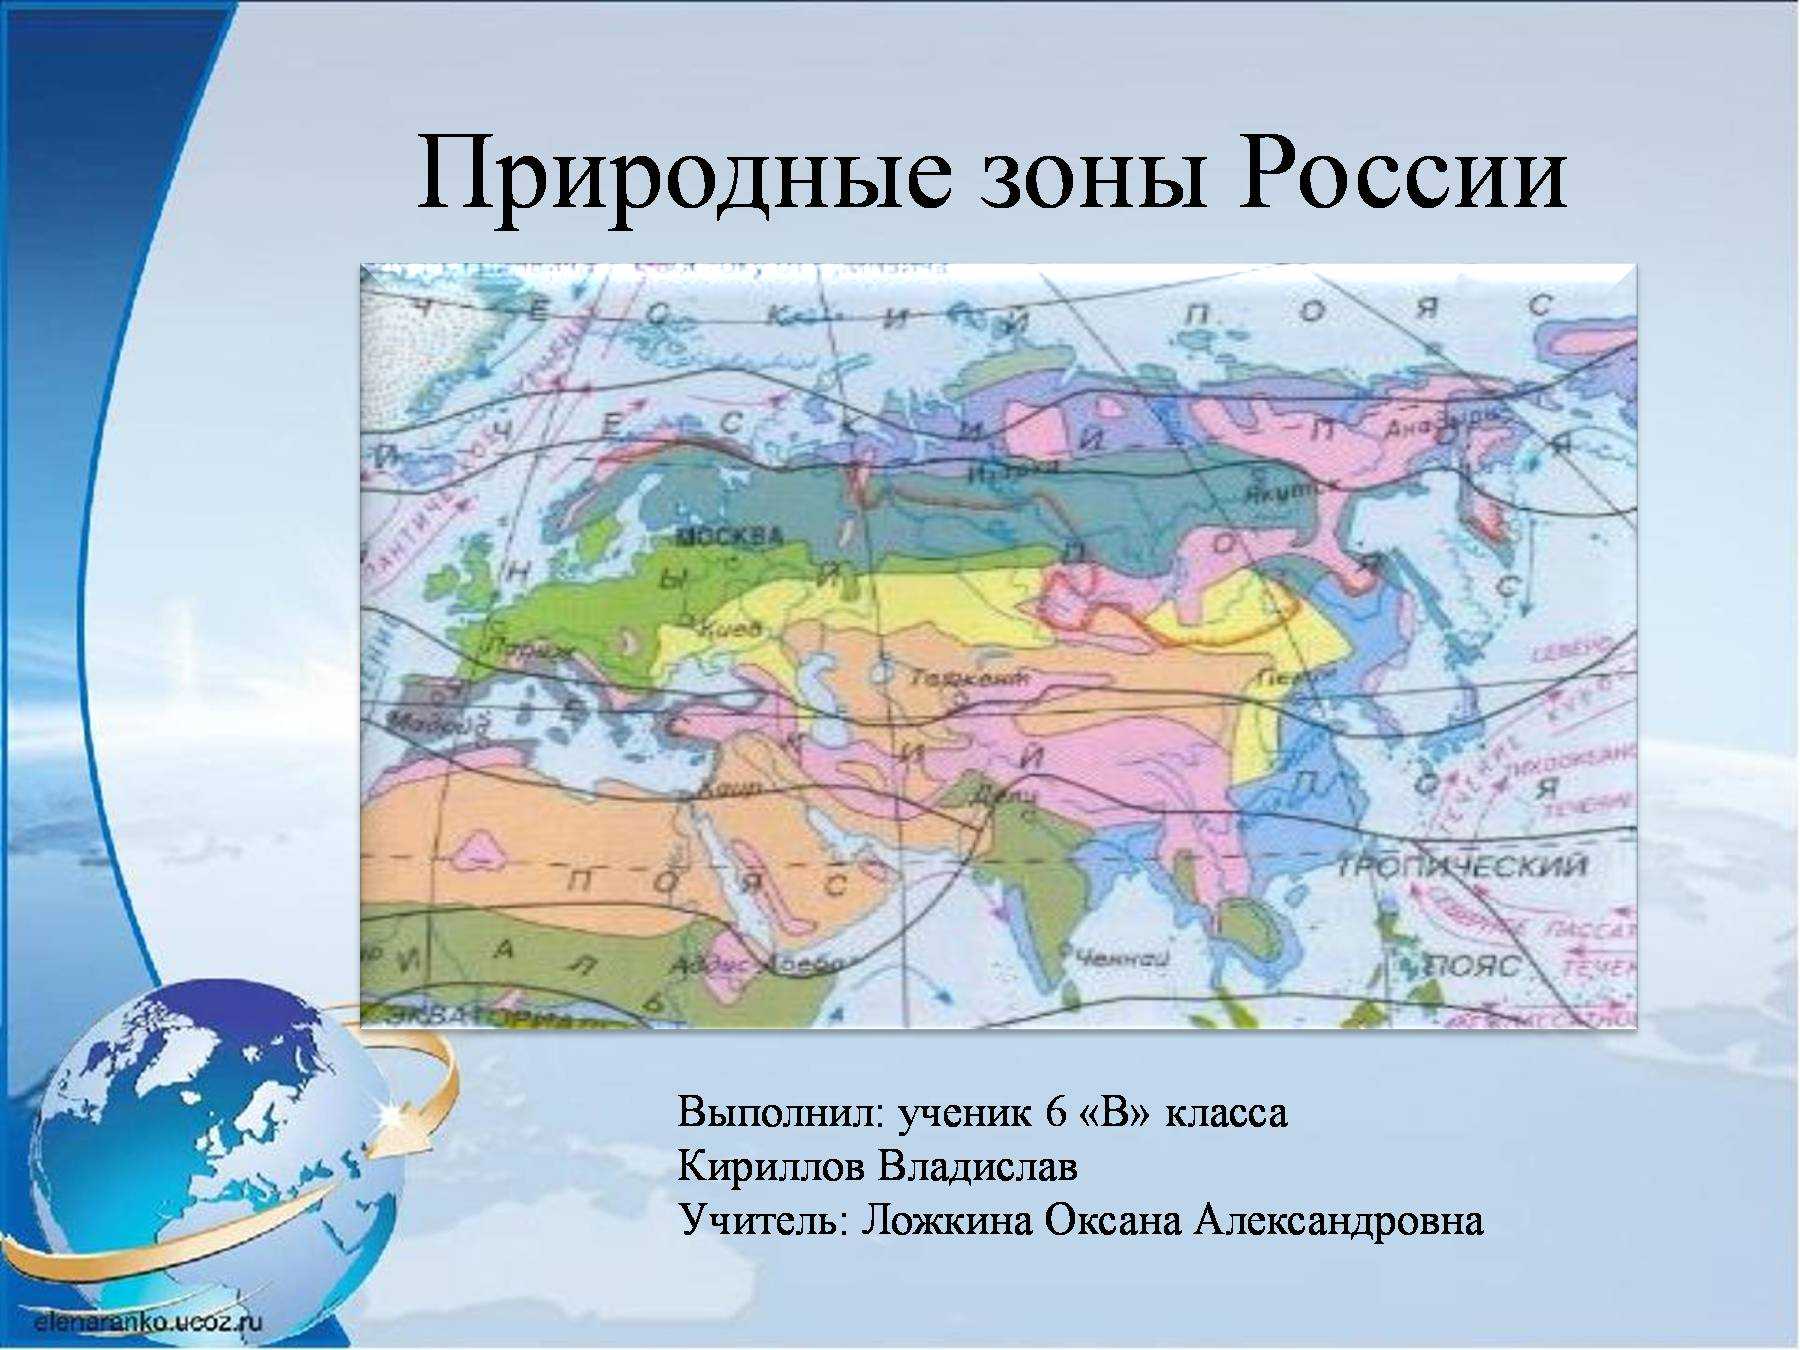 Безлесные природные зоны россии ️ климатические условия северных и южных территорий, характерные особенности рельефа, растительный и животный мир